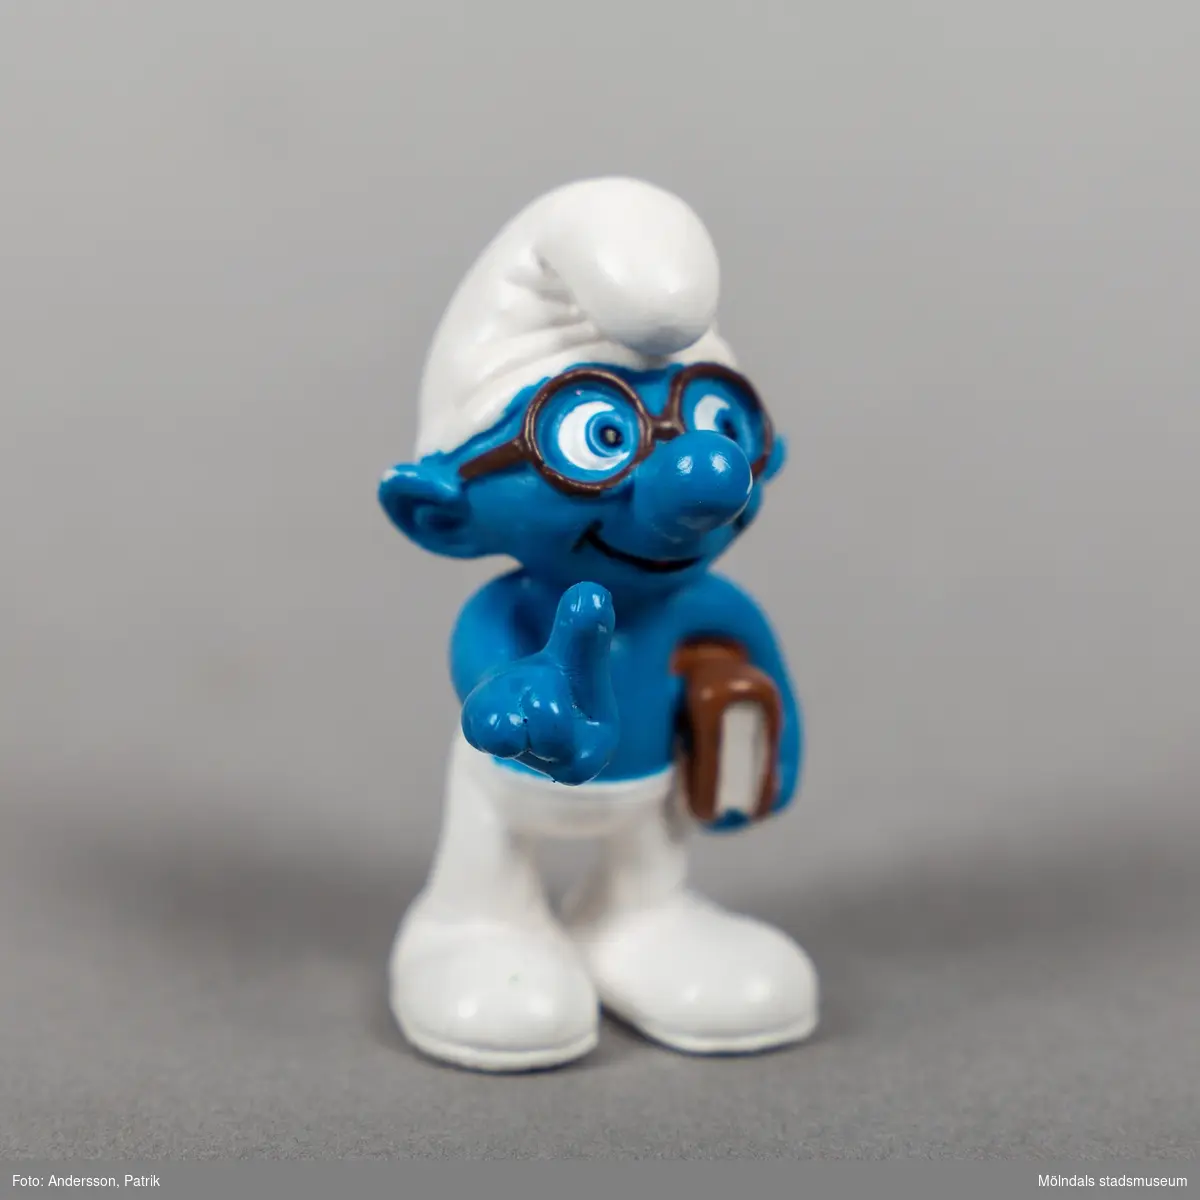 Tomteliknande figur som kallas Smurf, med blå kropp, vit luva och vita byxor. Figuren har glasögon och en bok under armen. 

Smurfarna eller Smurferna (franska: Les Schtroumpfs) är en belgisk tecknad serie som kretsar kring en grupp blå varelser med samma namn. Det tomteliknande folket skapades i slutet av 1950-talet av den belgiske serieskaparen Pierre "Peyo" Culliford.